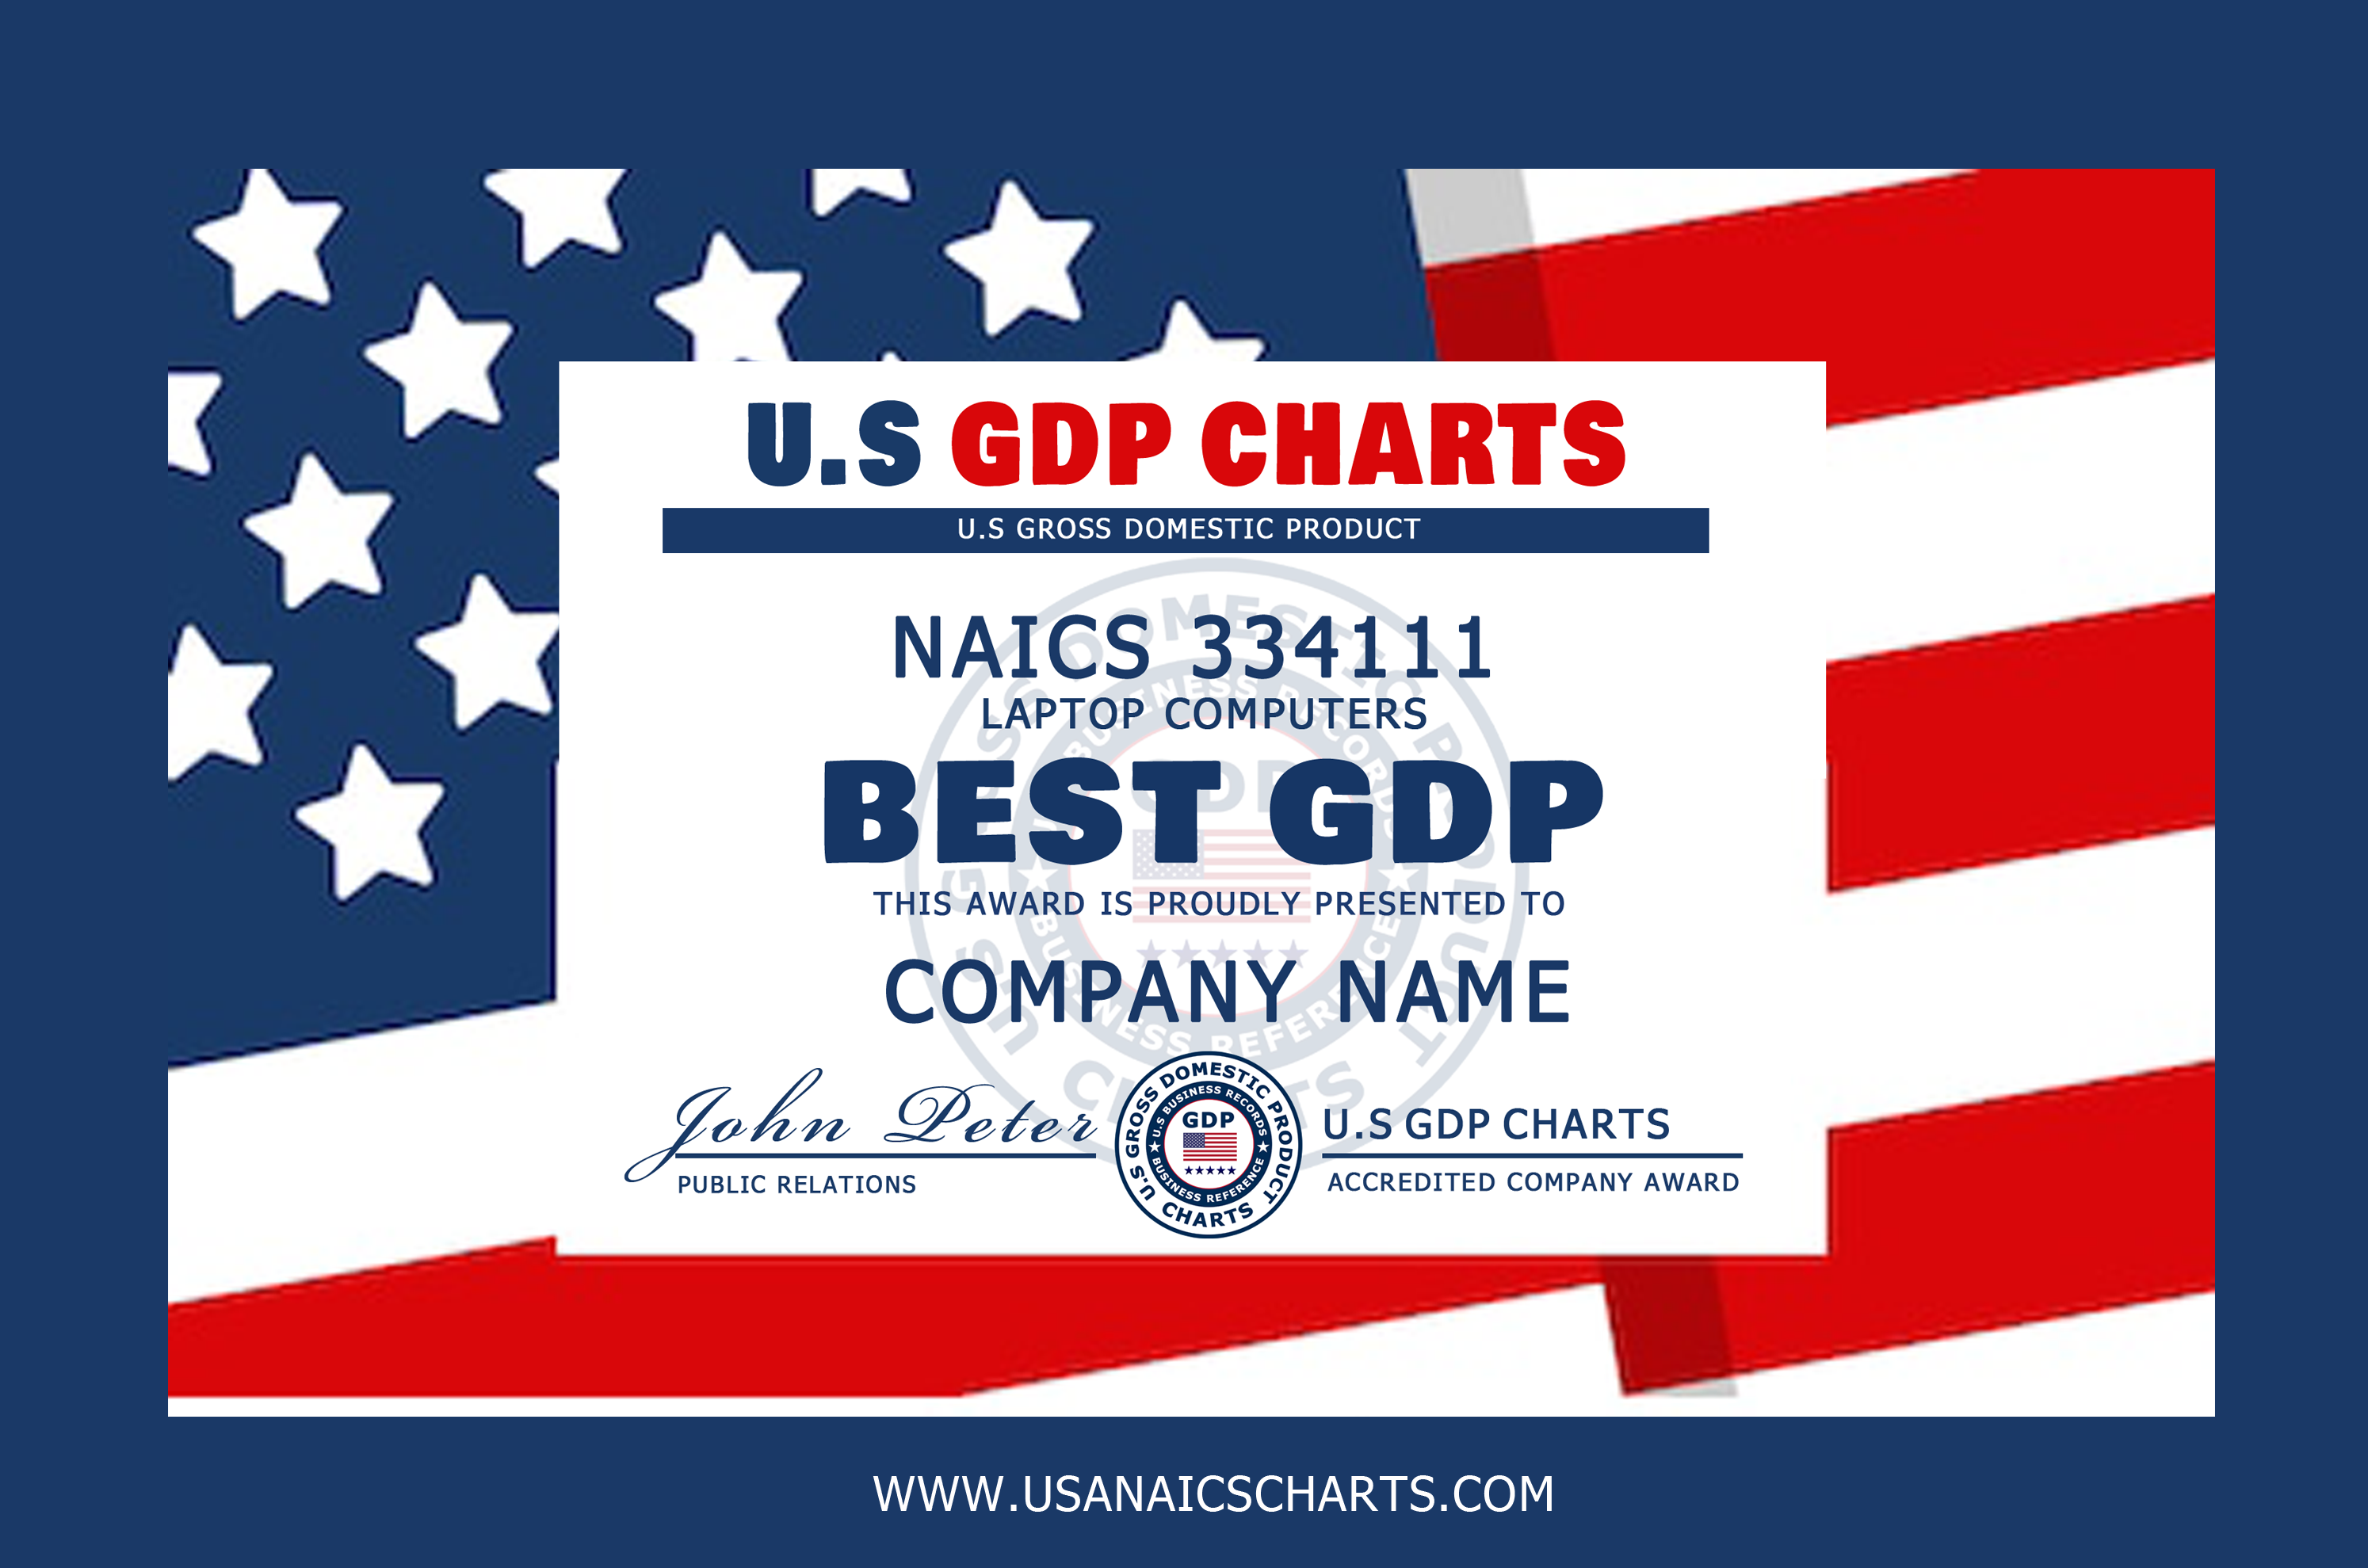 Best NAICS GDP Award